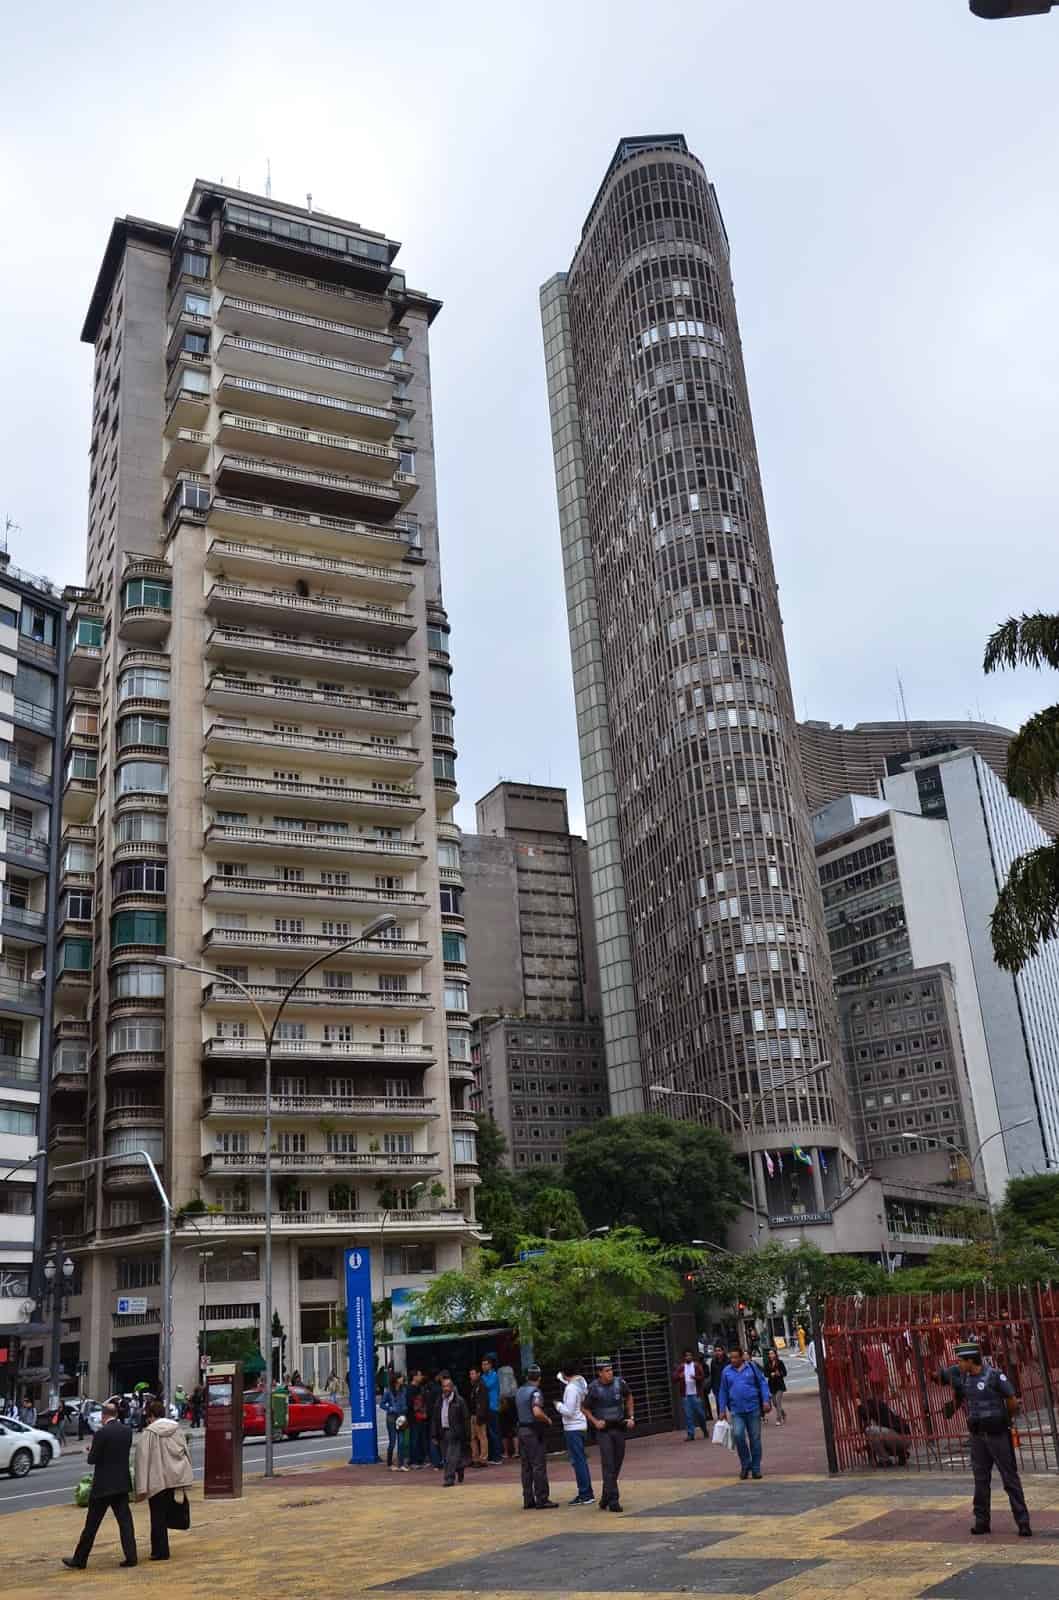 Edifício Itália in São Paulo, Brazil